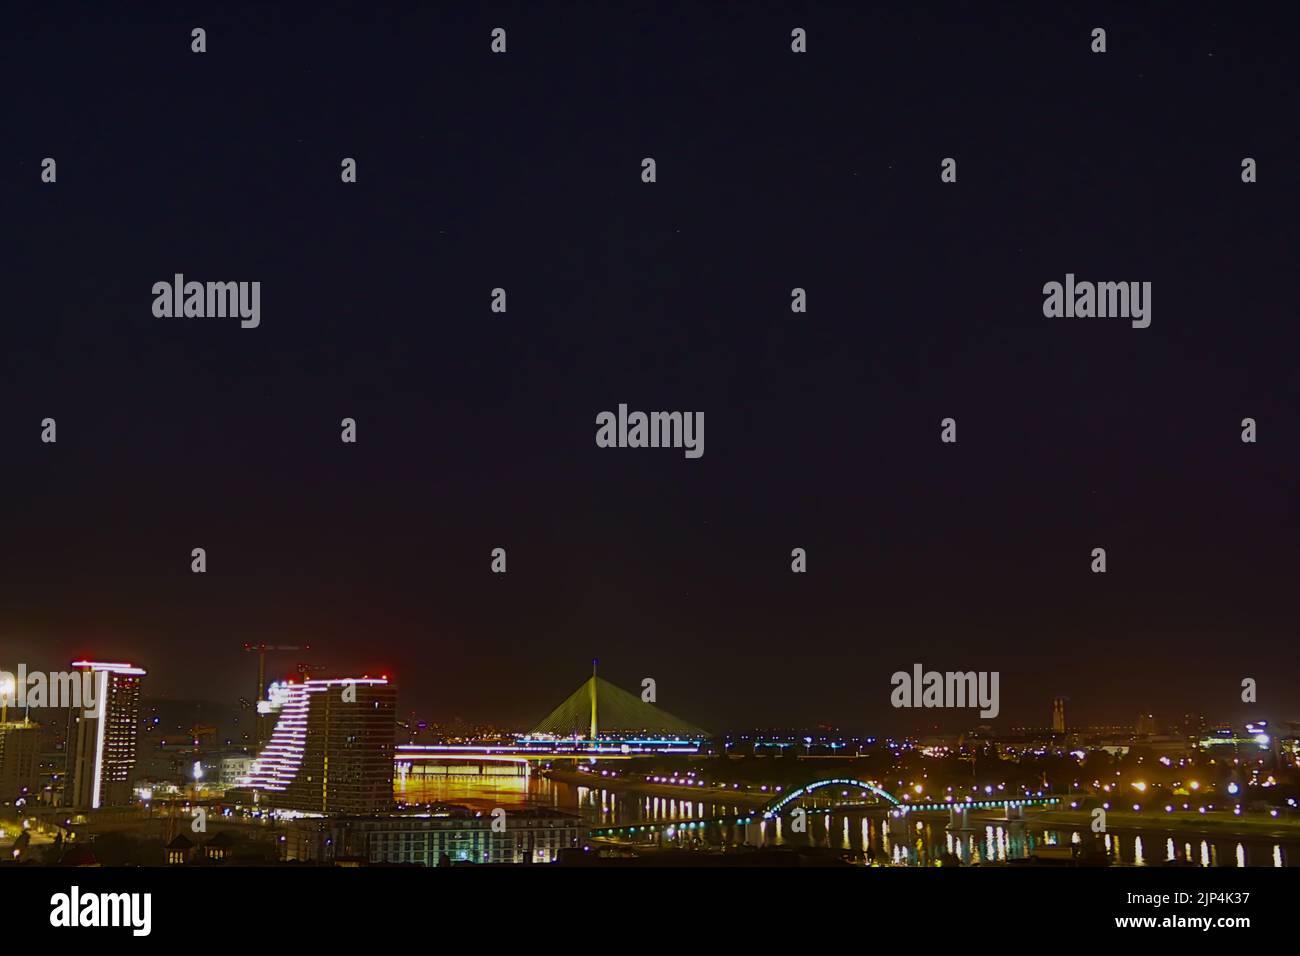 Vue panoramique de nuit sur Belgrade, (Beograd en serbe), ou le Danube et la partie ancienne mais aussi nouvelle de la ville Banque D'Images